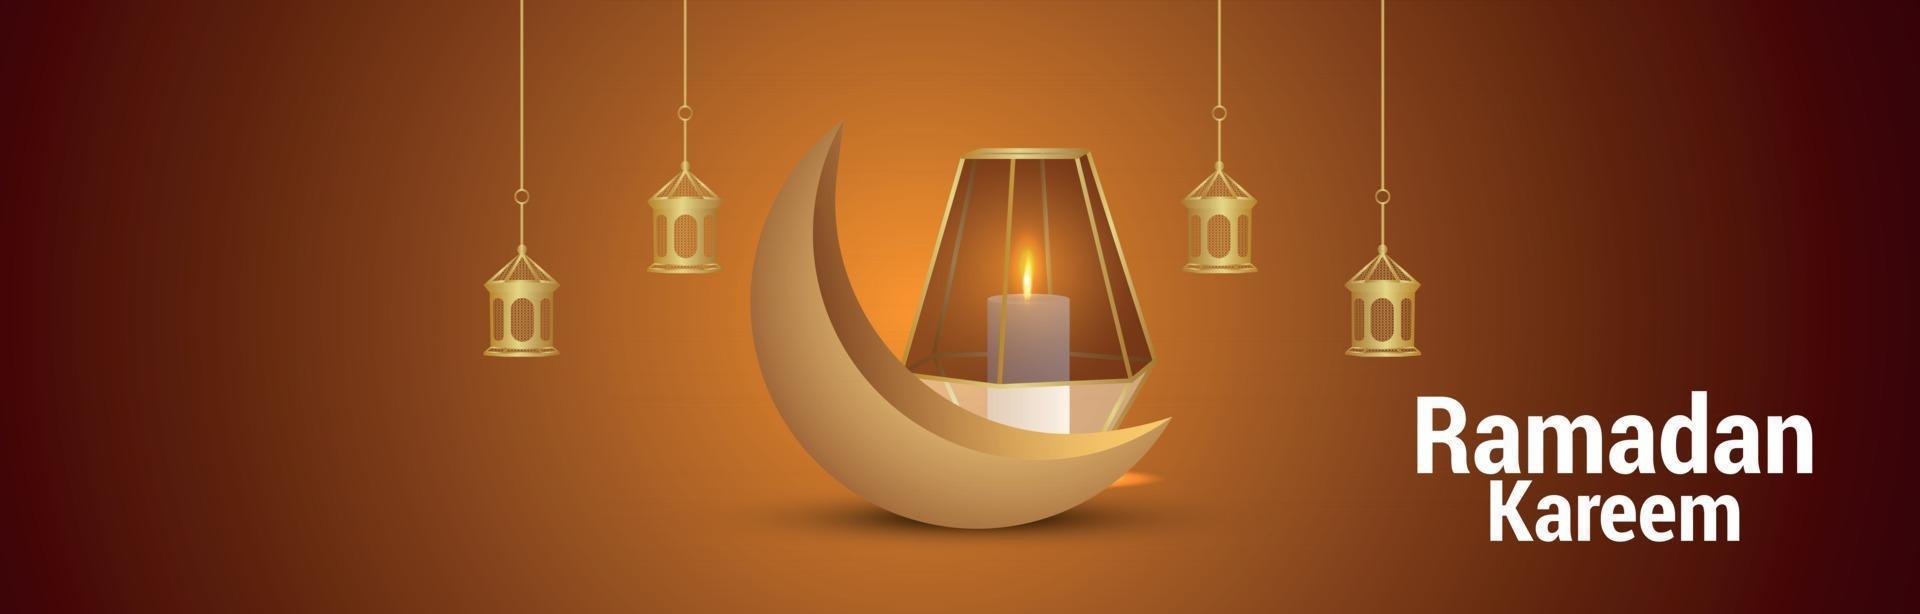 banner o intestazione del festival islamico di ramadan kareem con illustrazione creativa vettore